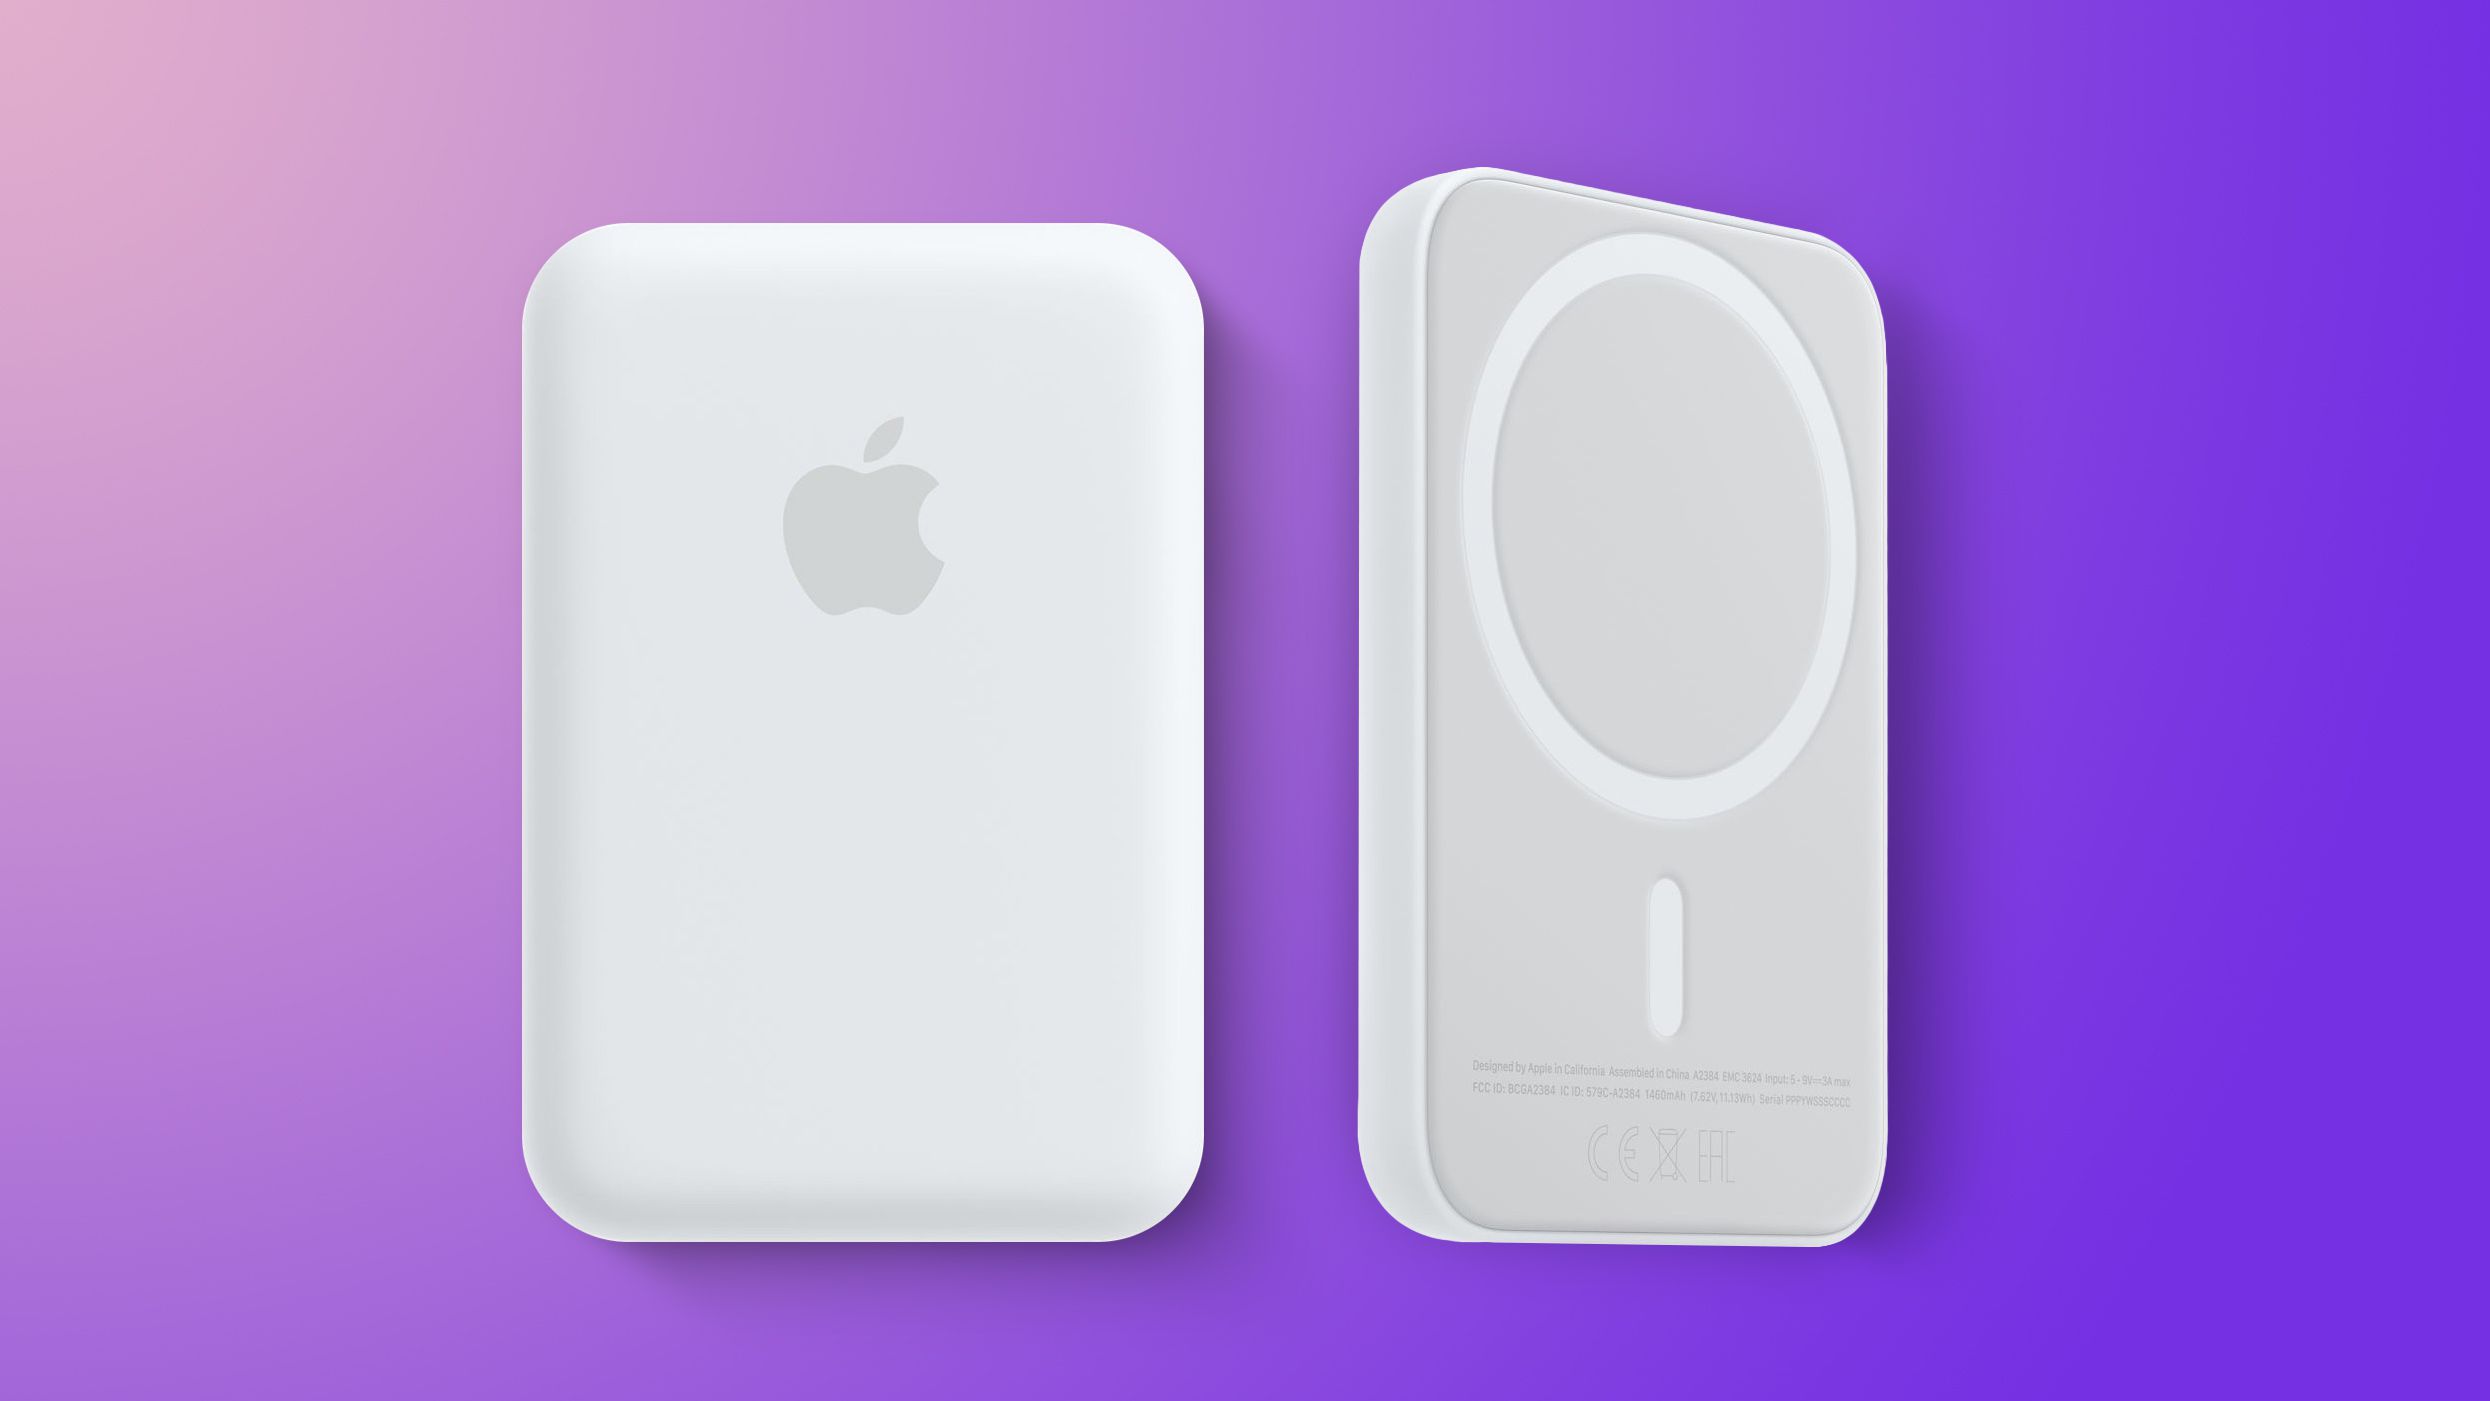 Sono previsti diversi accessori Apple USB-C ed è in fase di sviluppo un nuovissimo pacco batteria MagSafe “impilabile”.